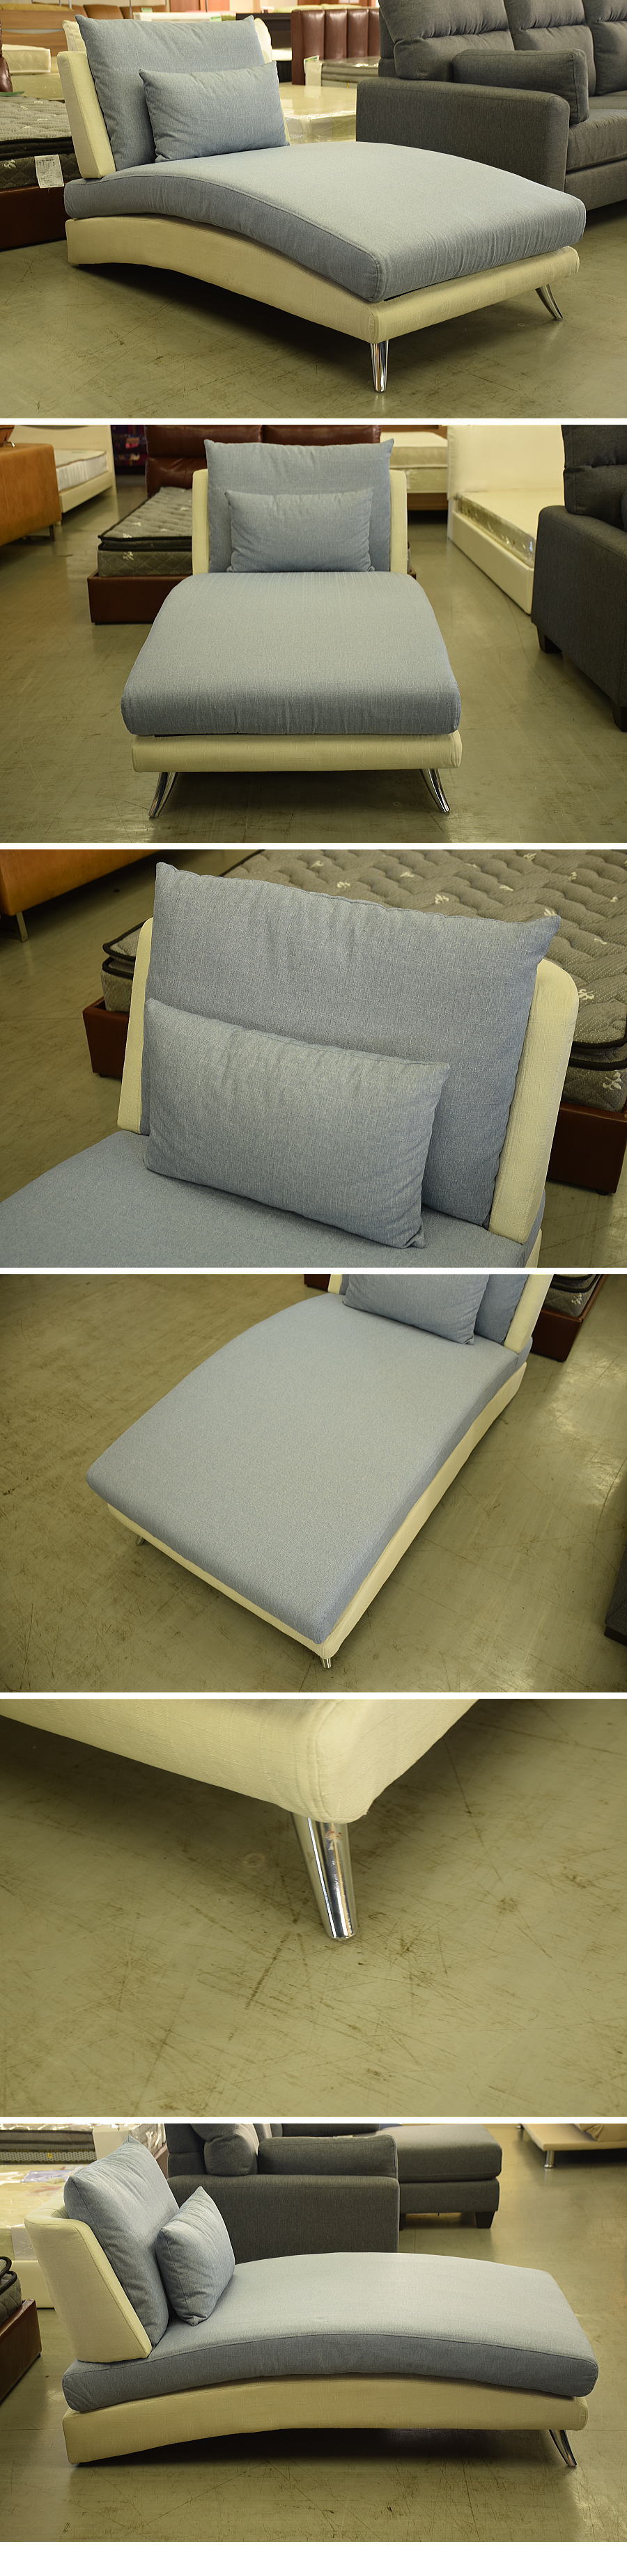 【24H限定】111W3 カーブの美しいカウチソファ■1人掛けシェーズロング寝椅子(検 展示品アウトレット展示処分品 布製